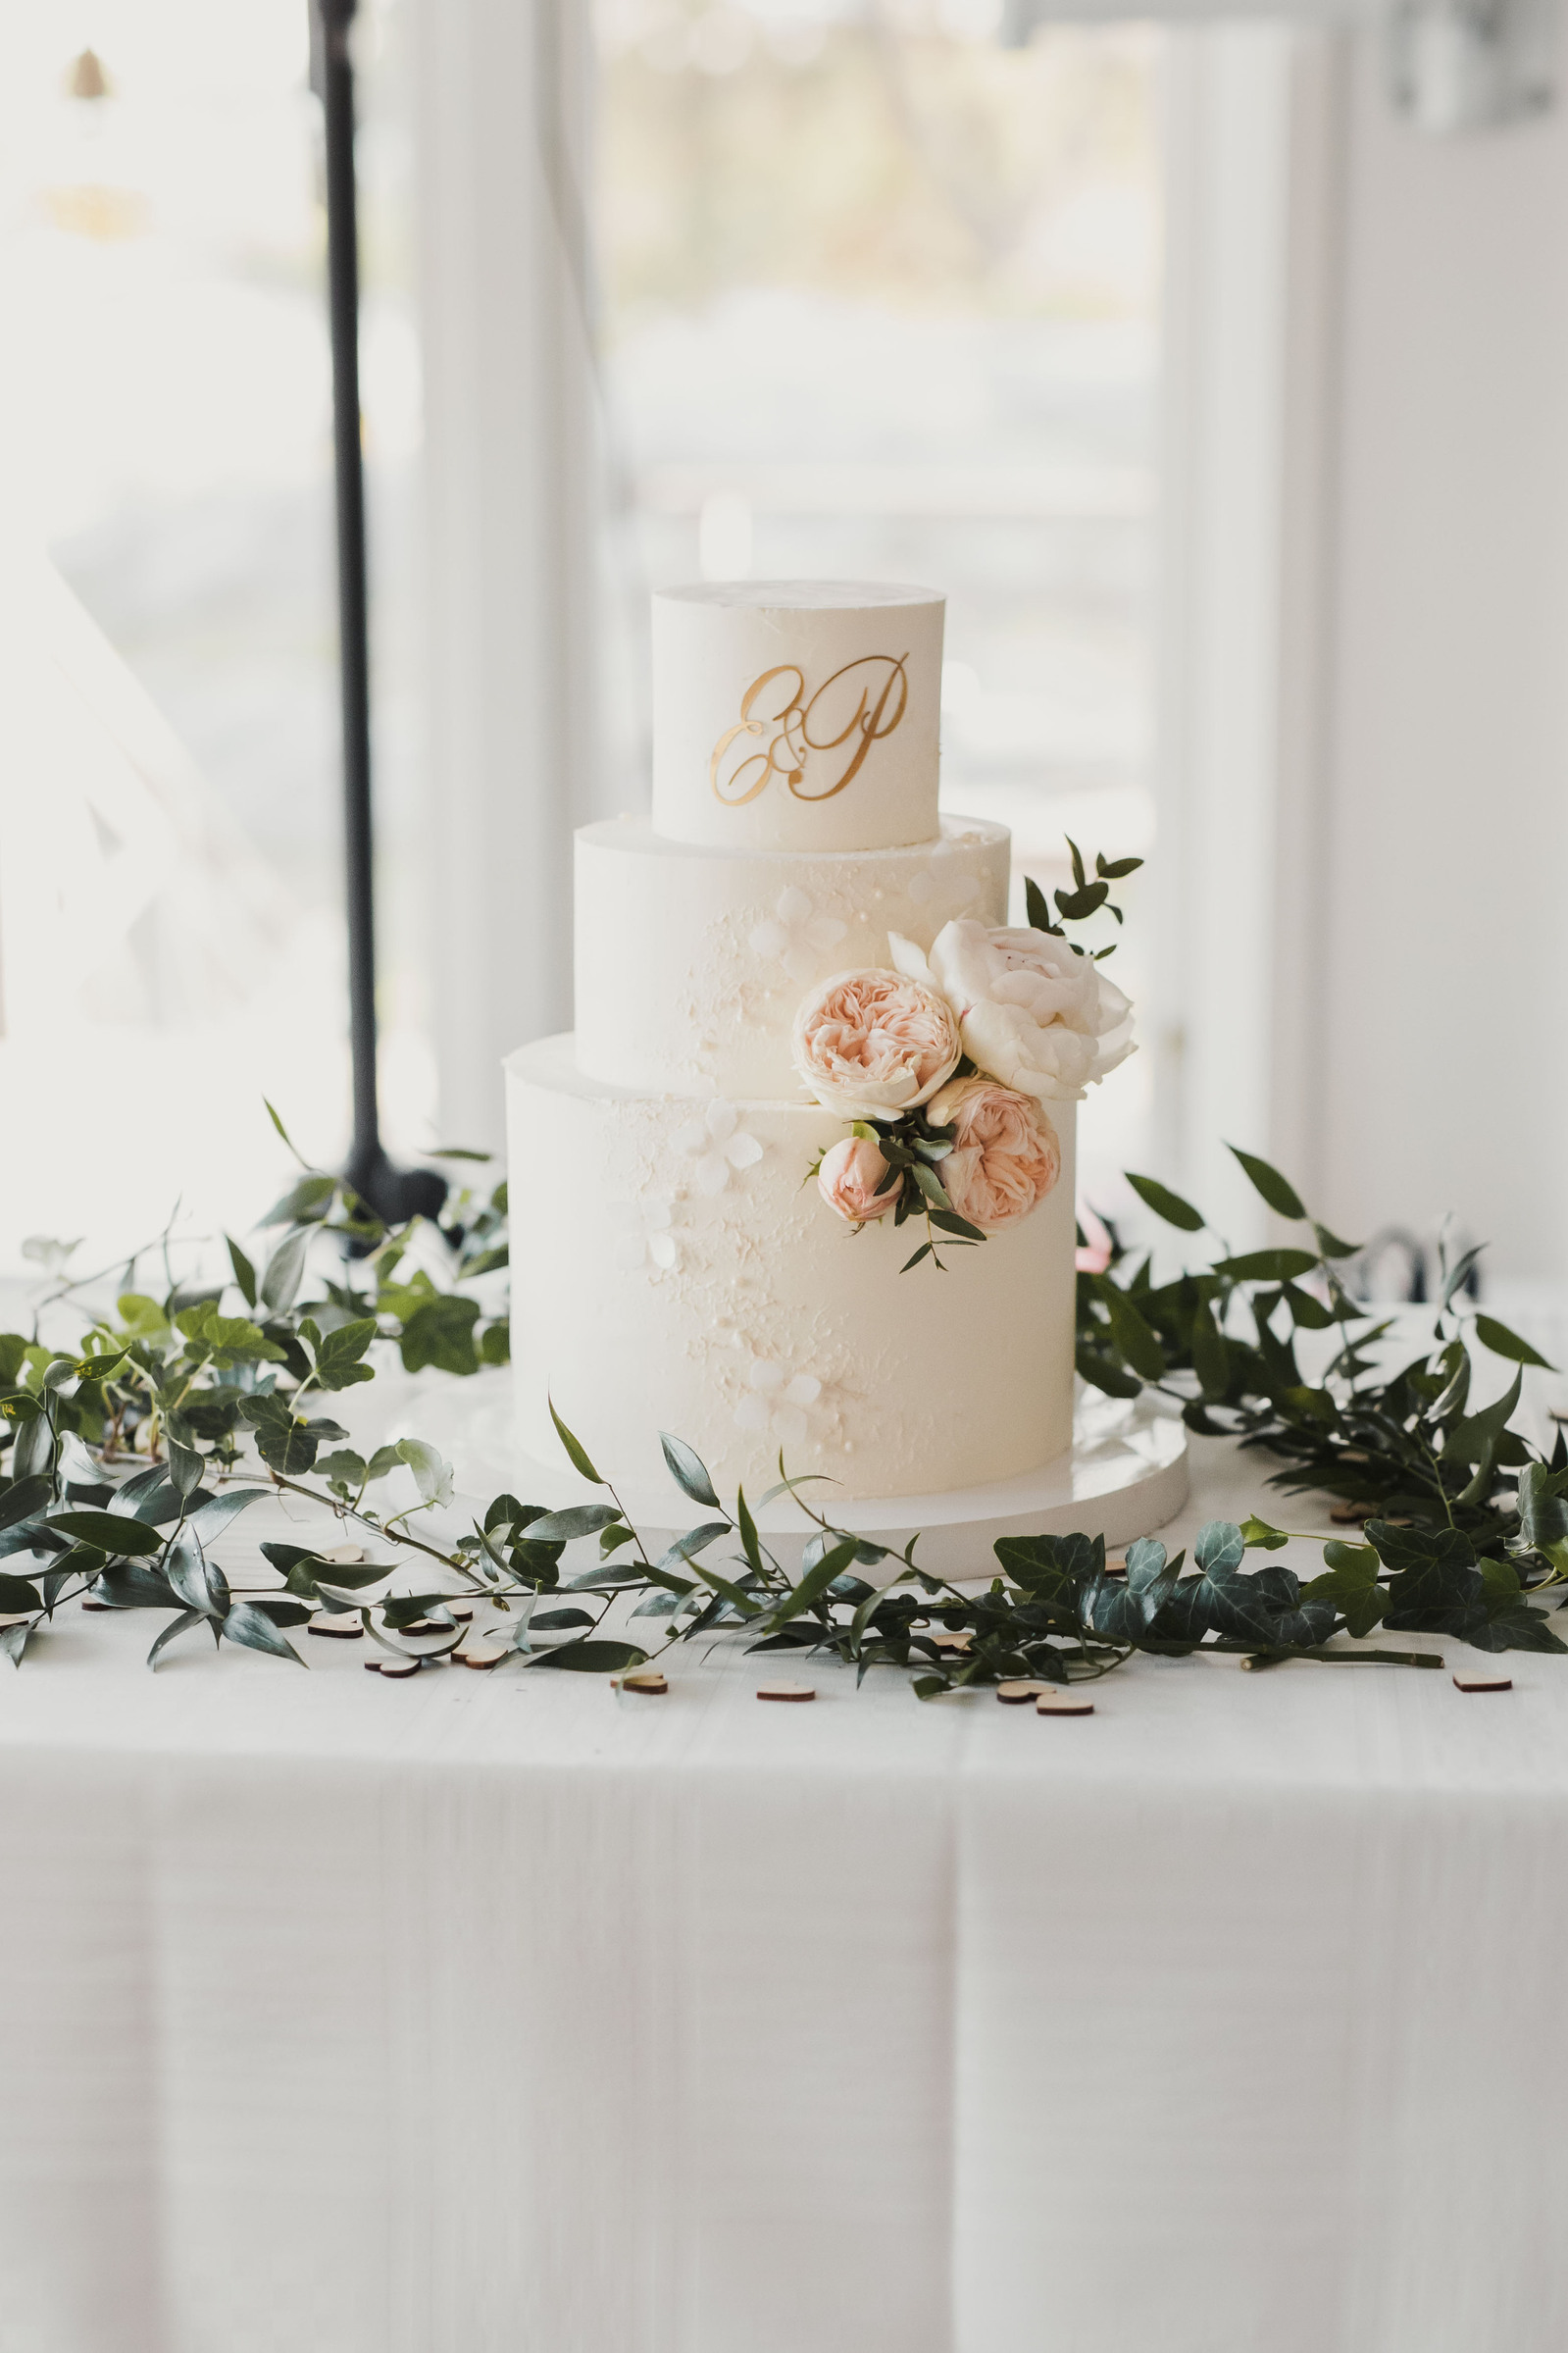 Bröllopstårta i 3 våningar i vitt, dekorerad med rosa blommor och brudparets initialer E och P. Tårtan är placerad på bord med vit duk  i festlokalen på restaurang Solbrännan. Bakom skymtar fönster stativ till högtalare.